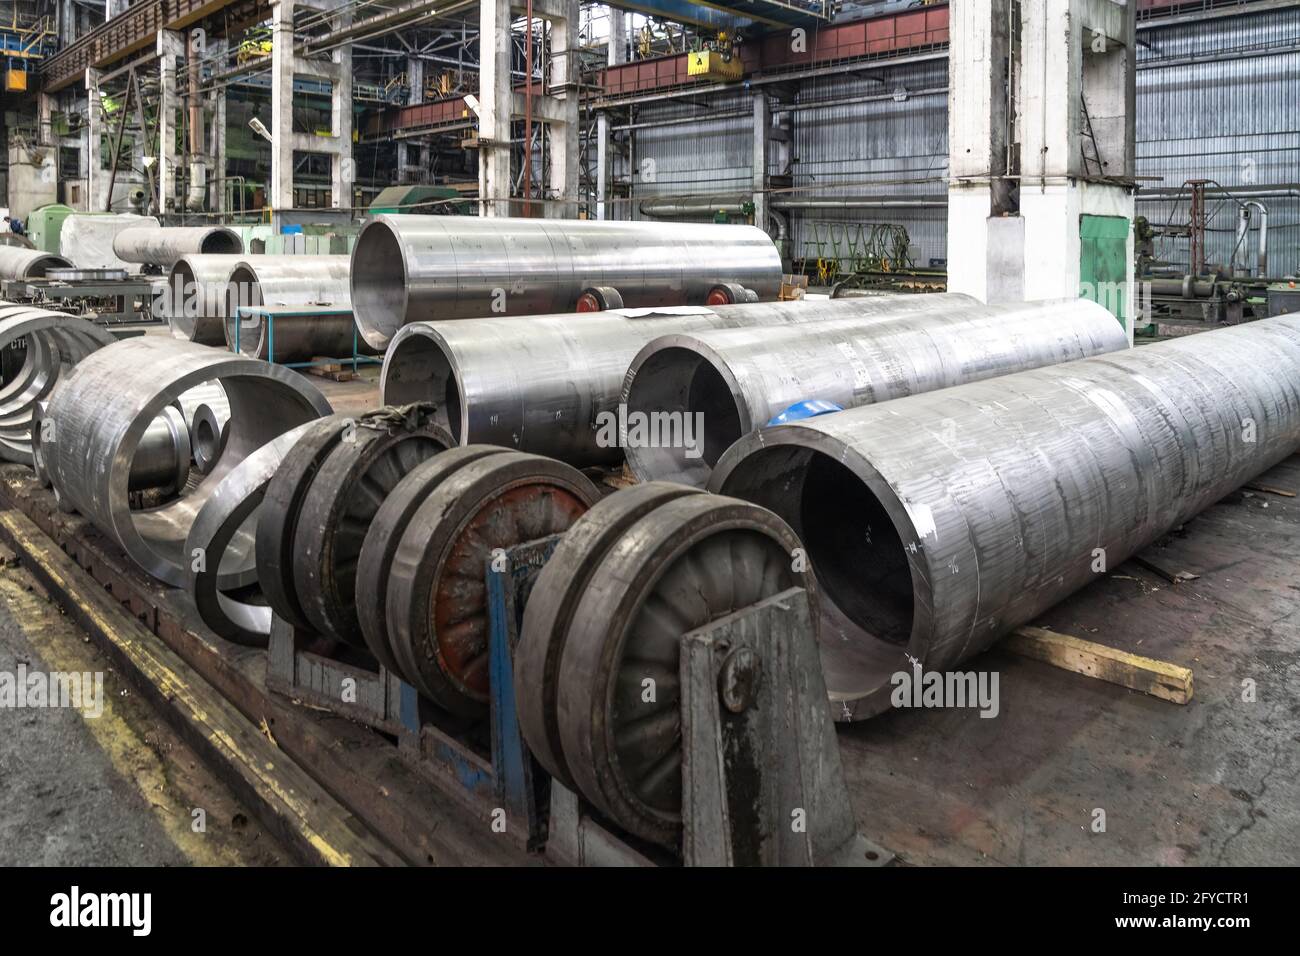 Ligne de production d'usine de tuyaux avec tuyaux tubulaires en acier sur le plancher, industrie lourde de travail des métaux. Banque D'Images